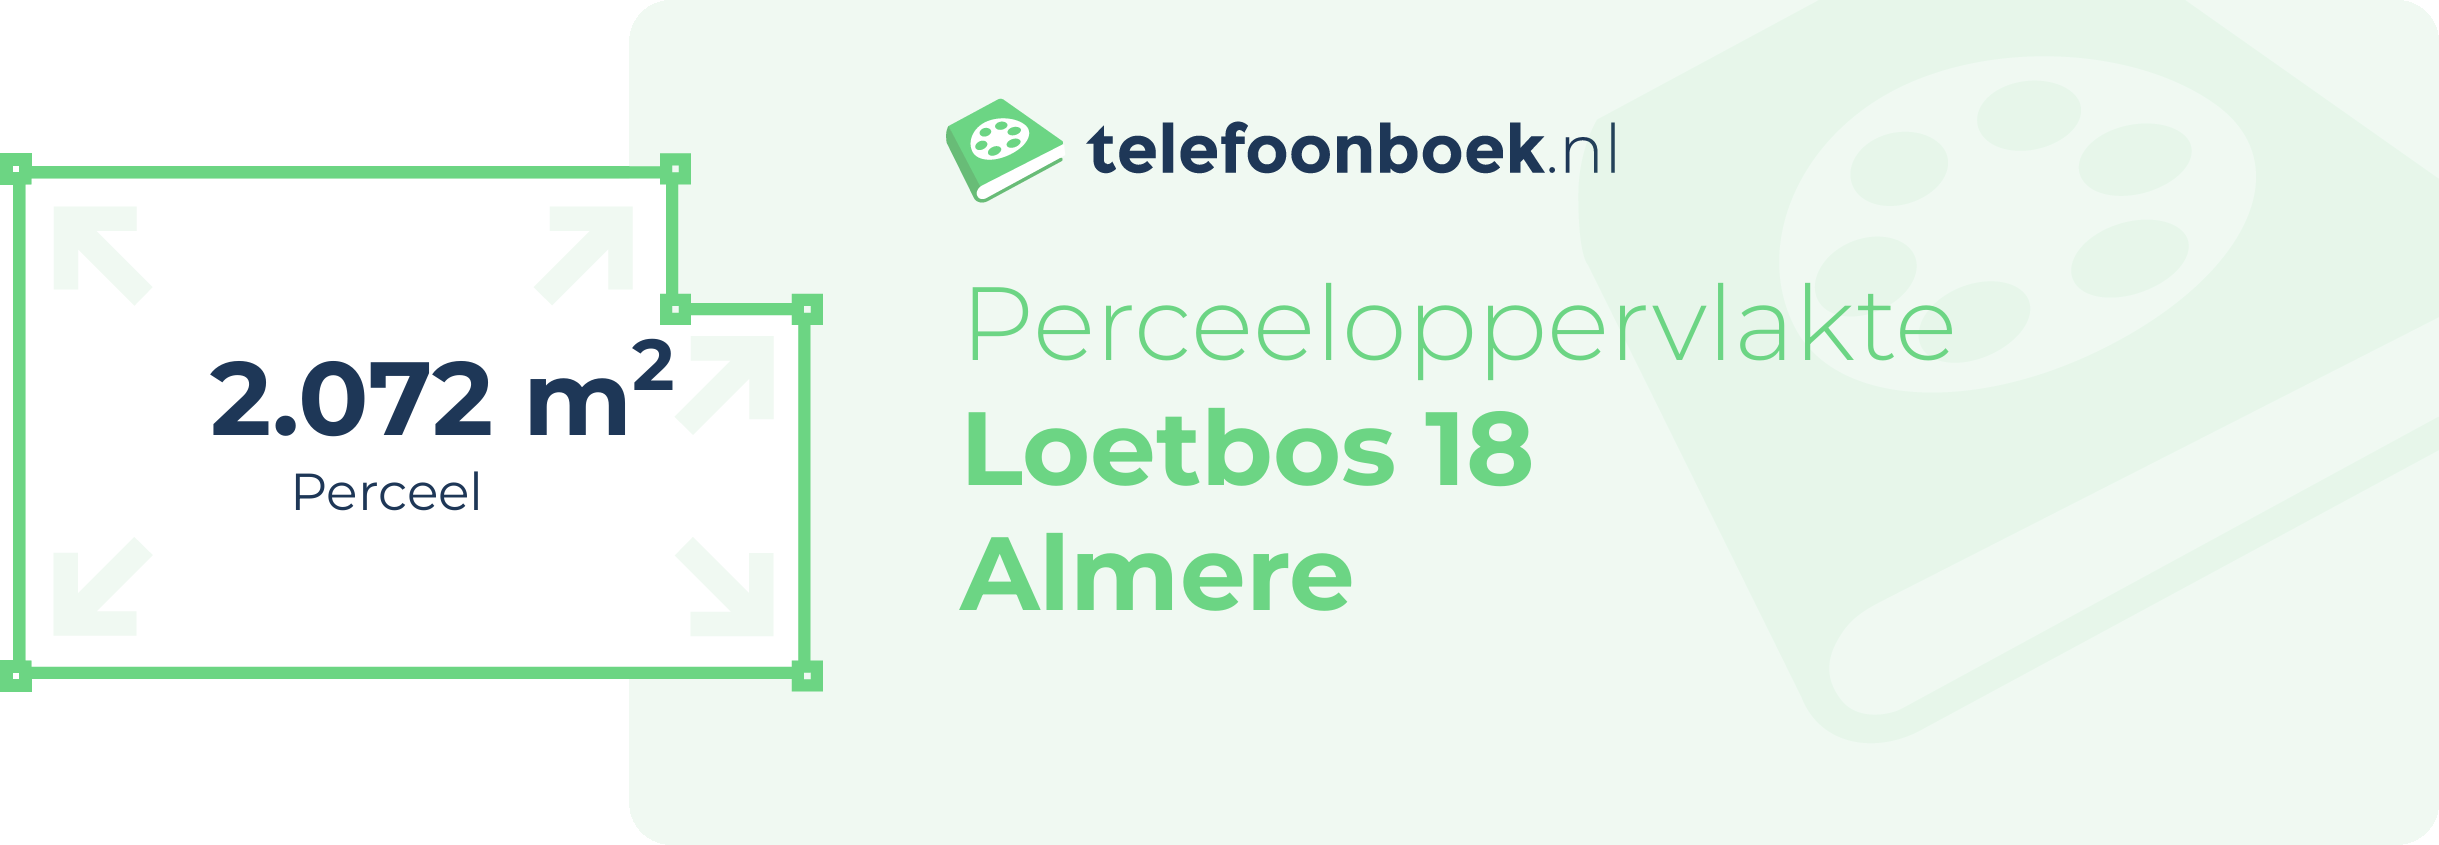 Perceeloppervlakte Loetbos 18 Almere